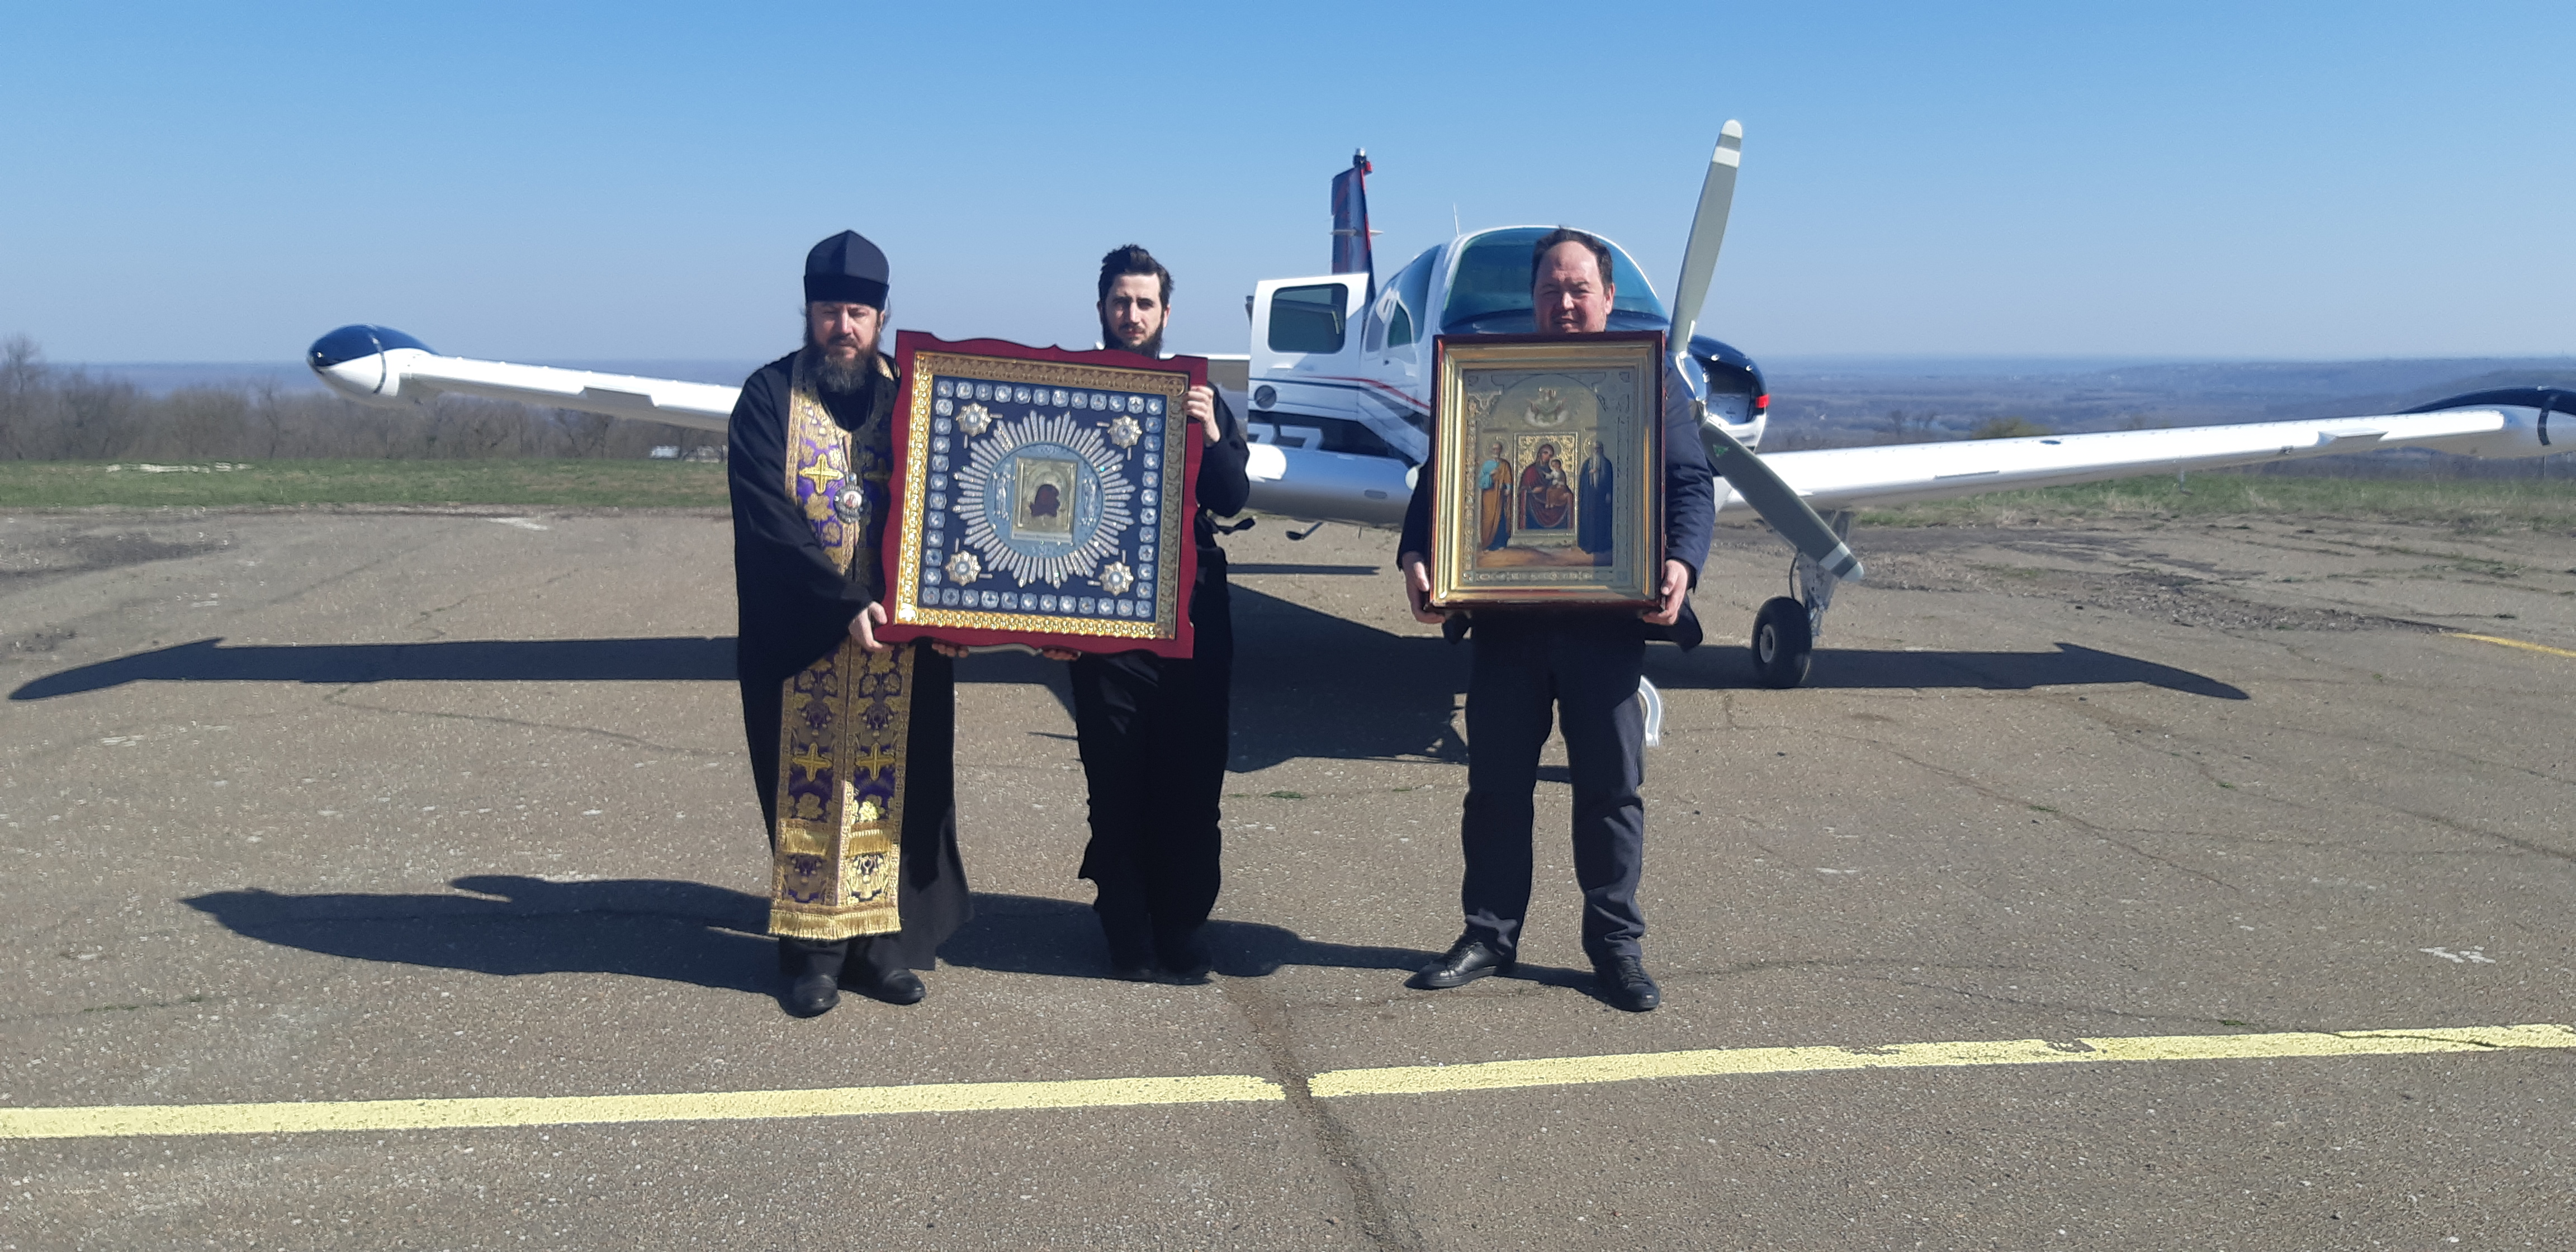 Над Молдовой пролетел самолет с двумя иконами. Так церковь борется с коронавирусом (ФОТО)